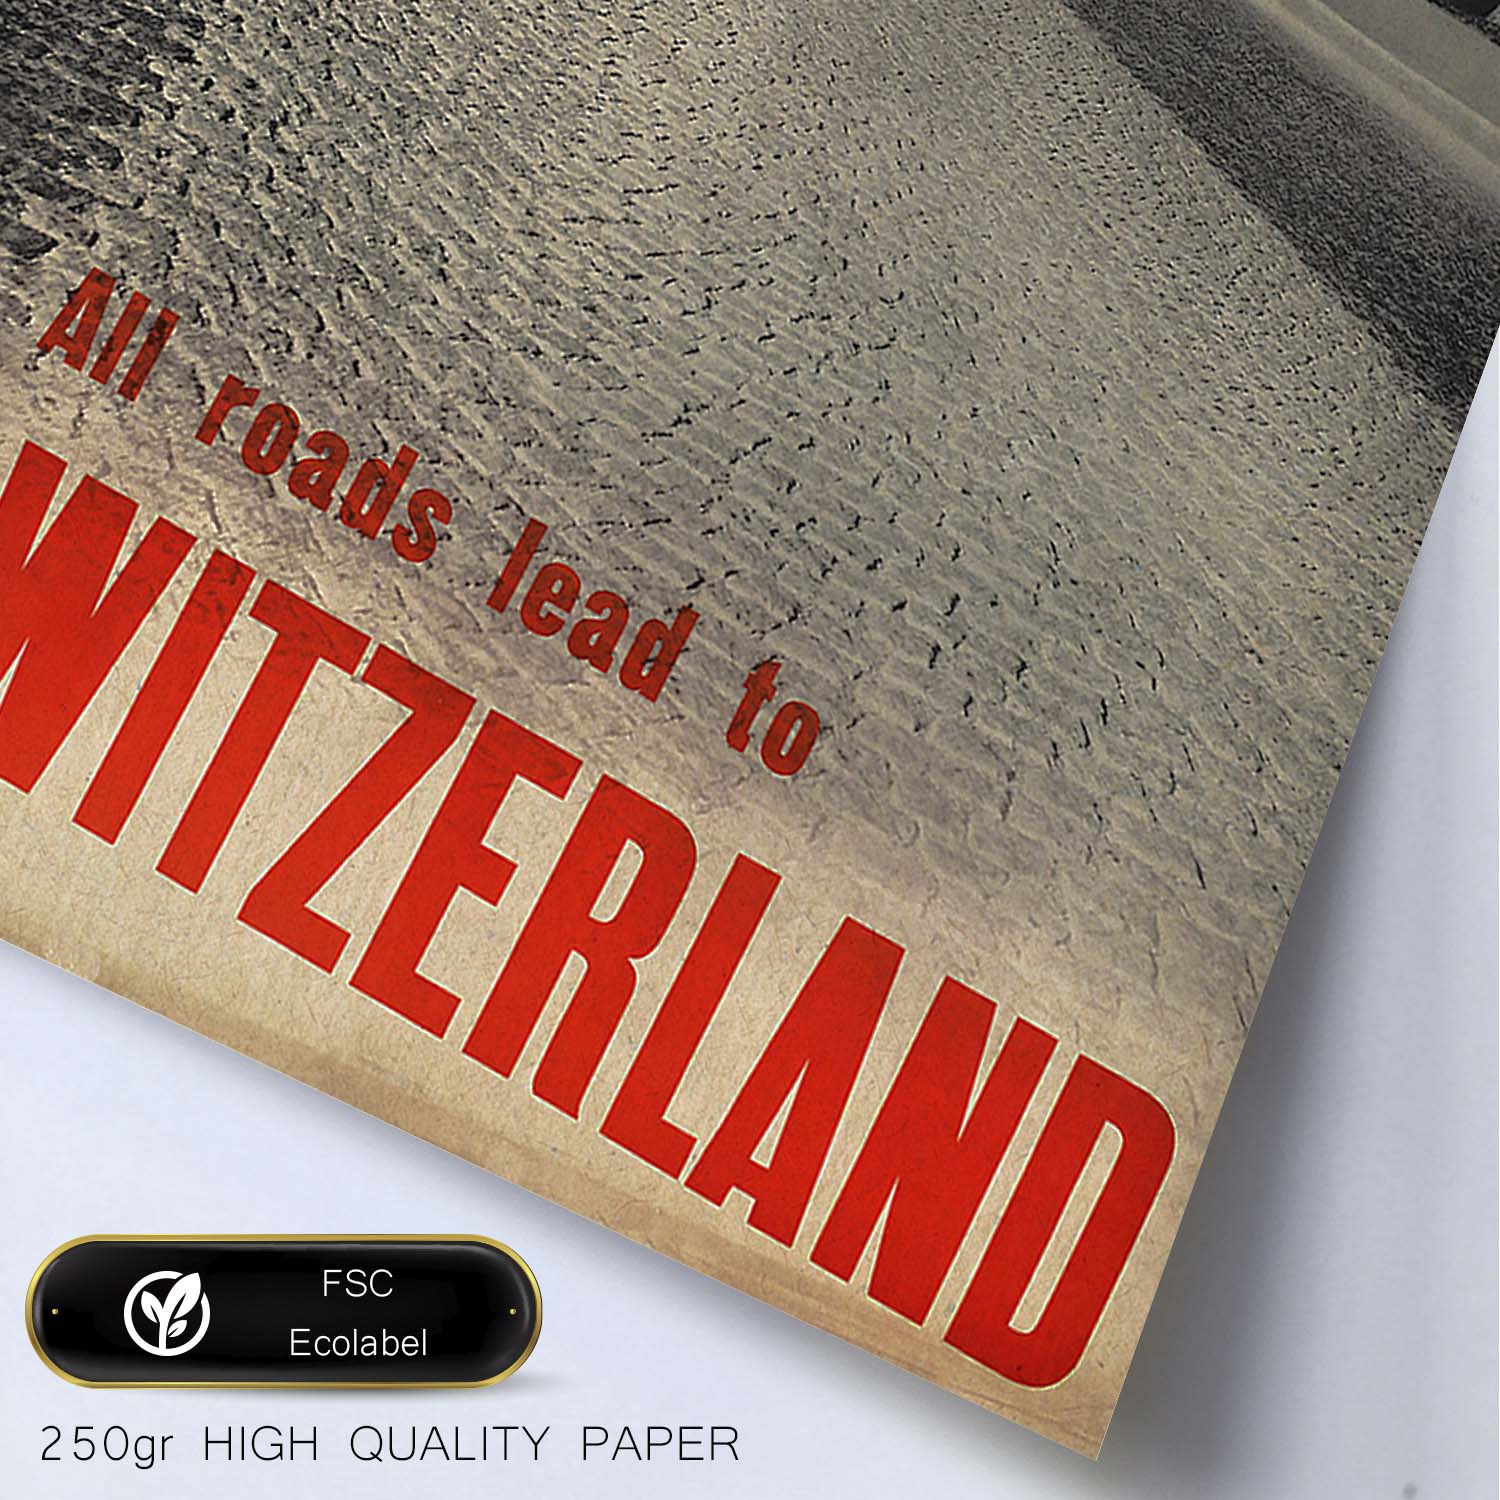 Poster vintage. Cartel vintage de montañas europeas. Todos los caminos llevan a Suiza.-Artwork-Nacnic-Nacnic Estudio SL